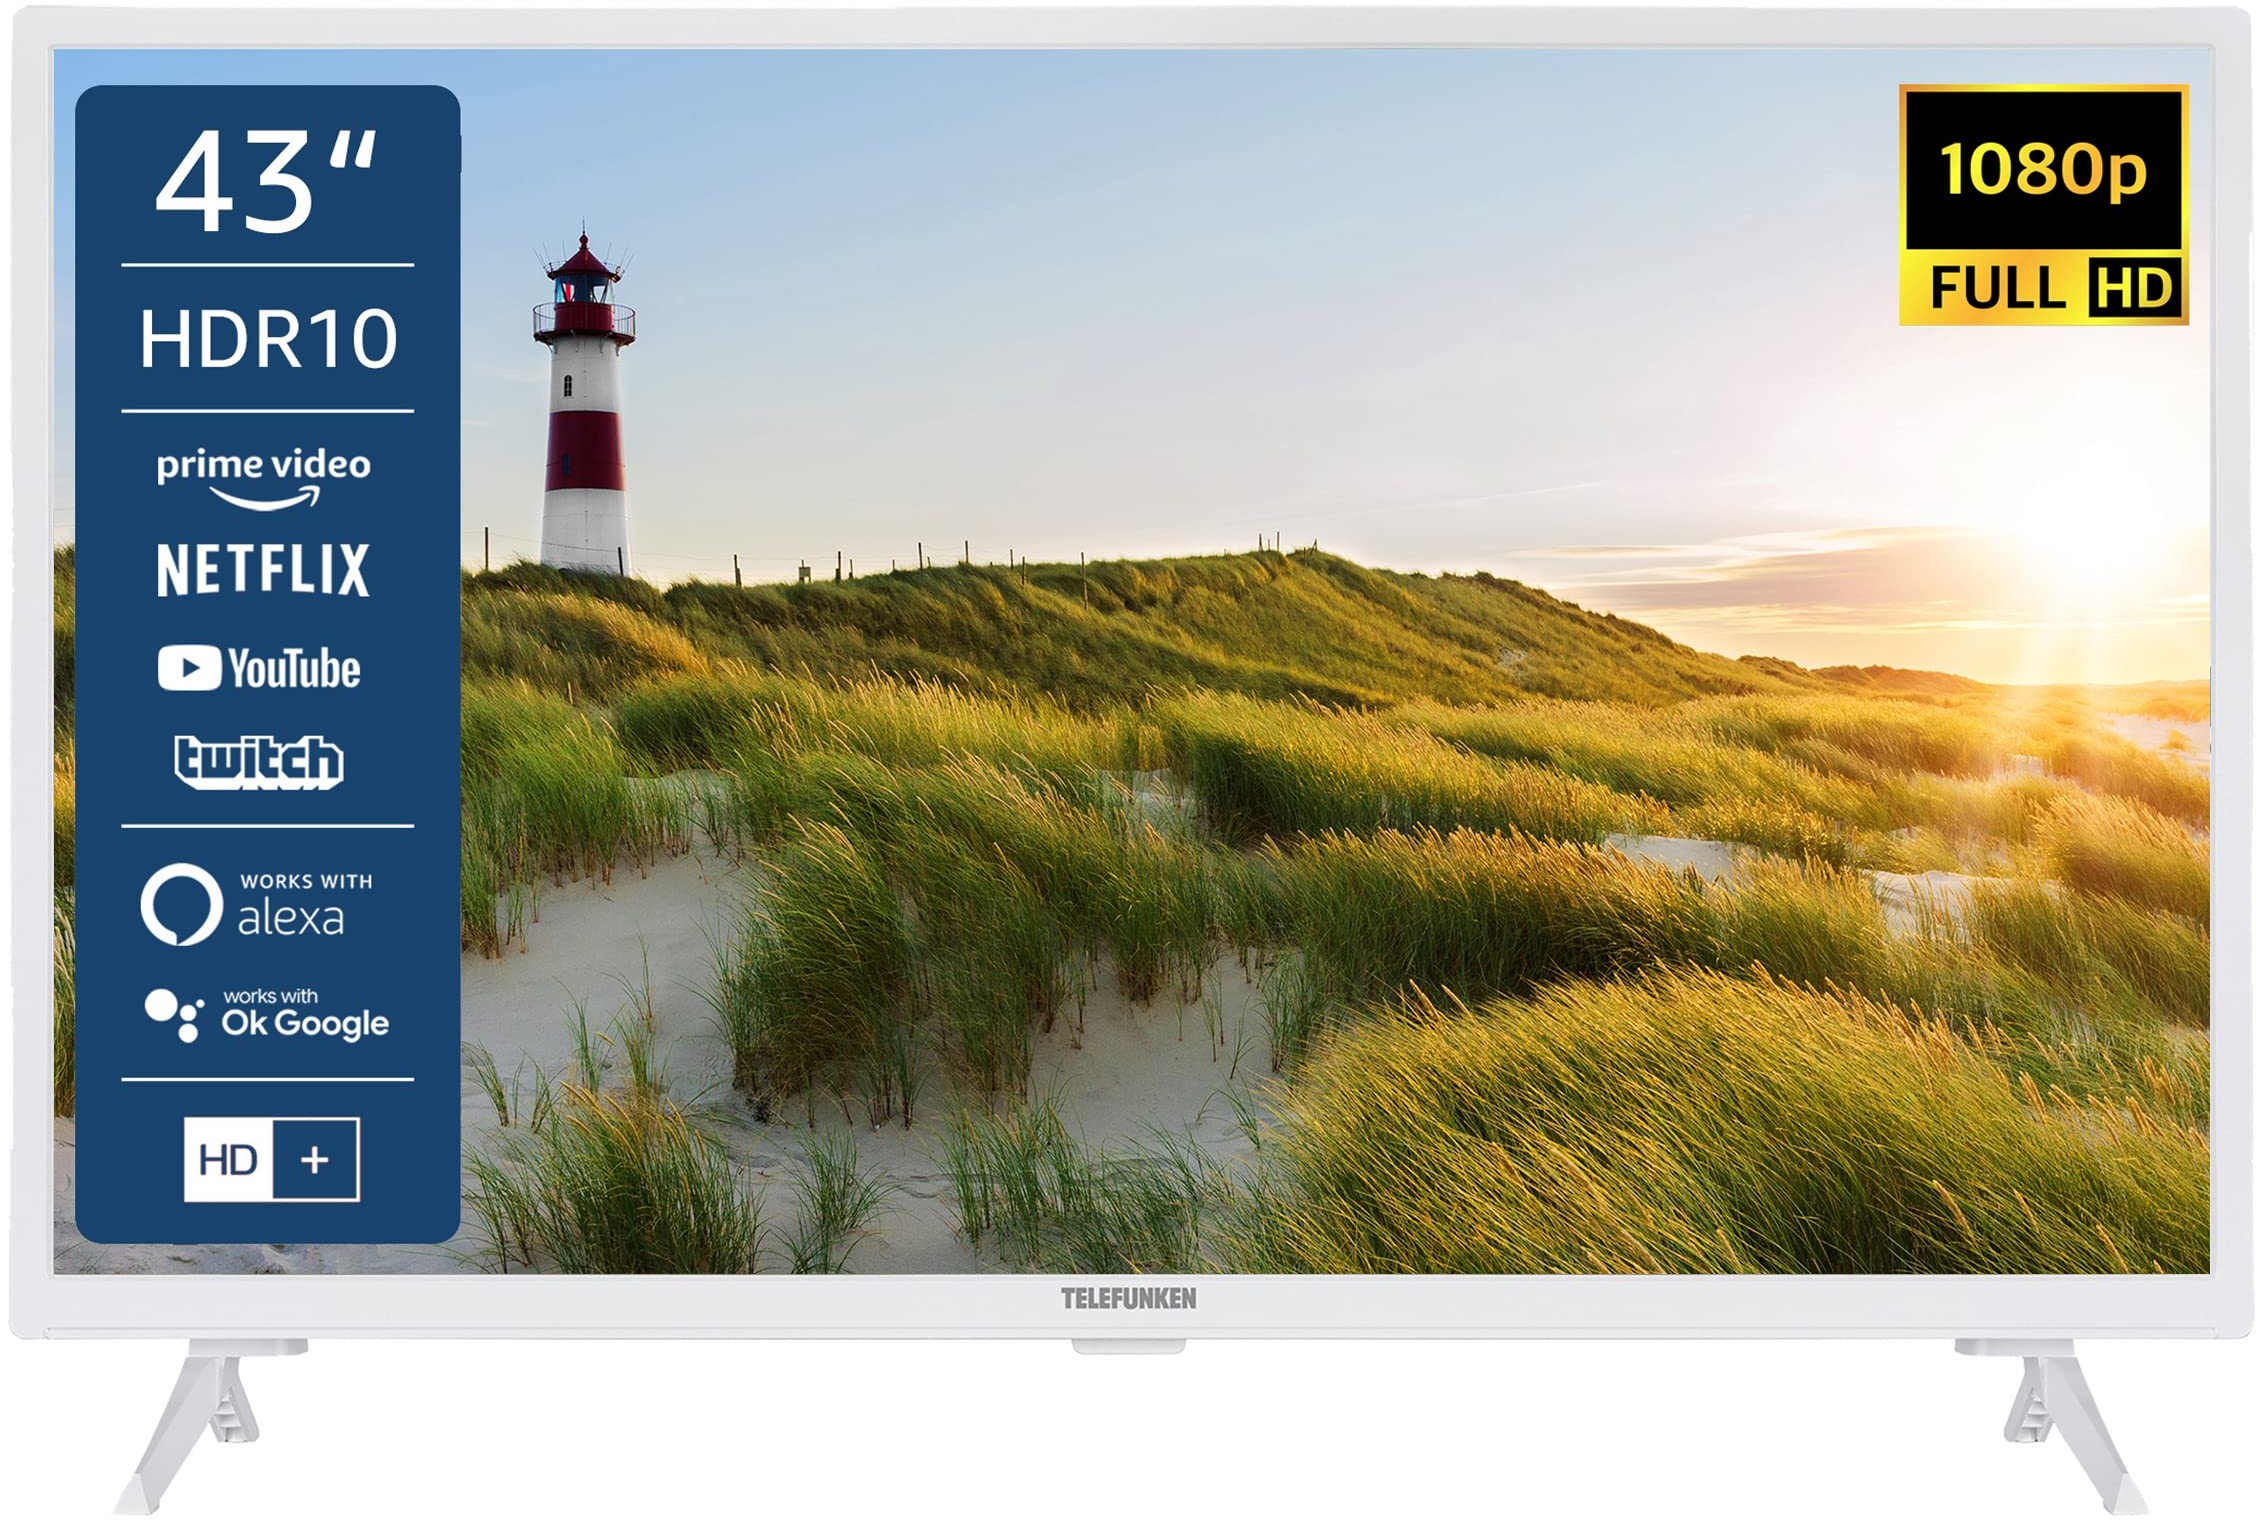 Telefunken XF43K550-W 43 Zoll Fernseher / Smart TV (Full HD, HDR, Triple-Tuner) - 6 Monate HD+ inklusive [2022] [Energieklasse E]